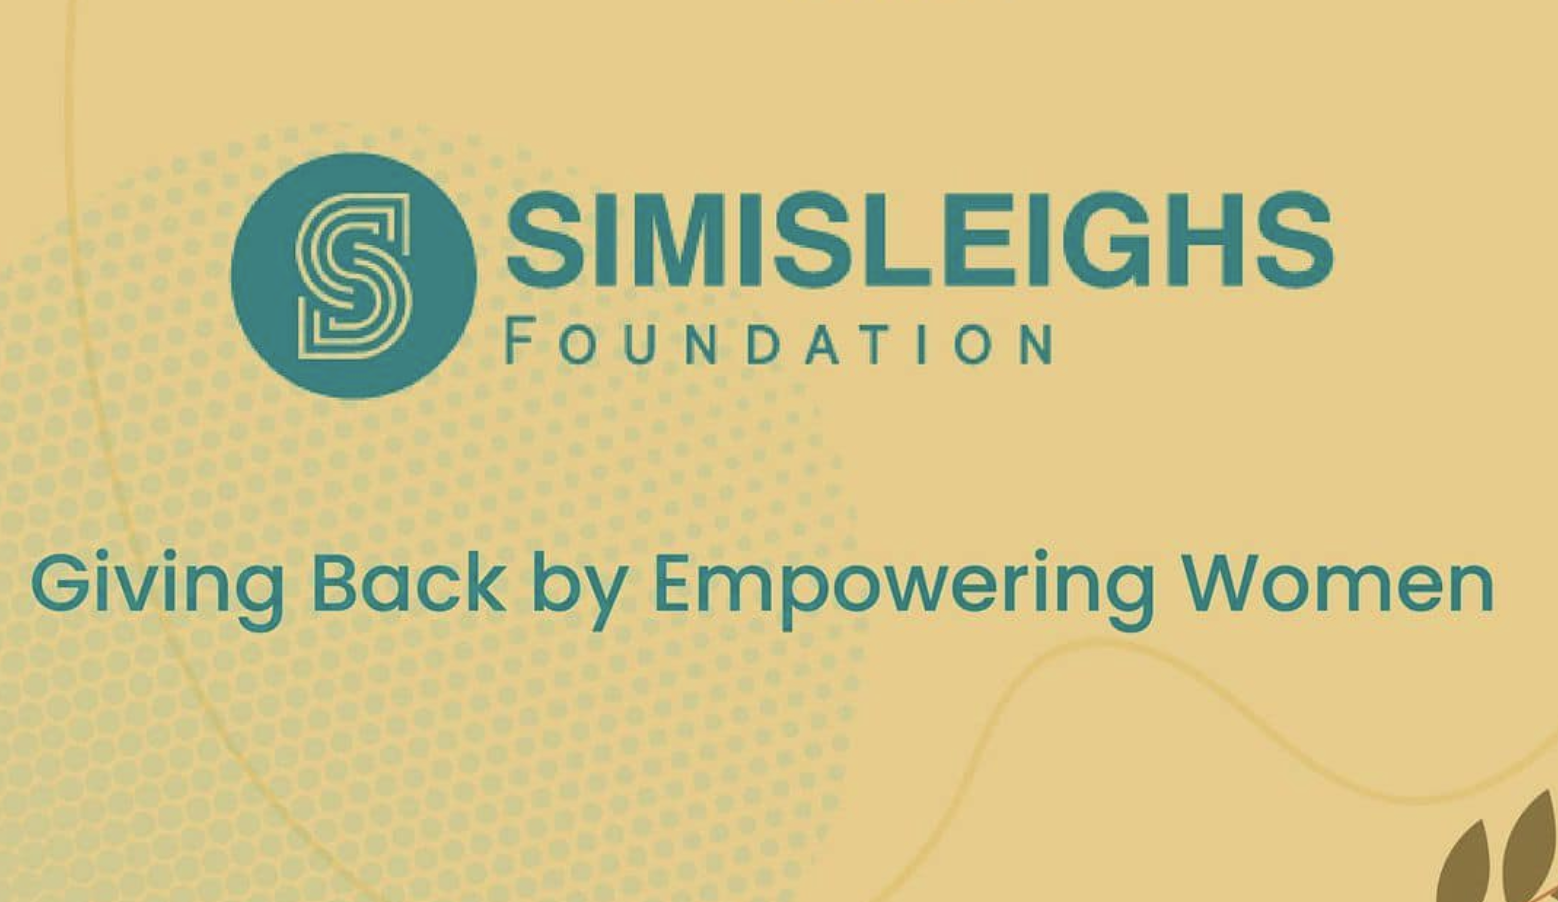 Simisleighs foundation